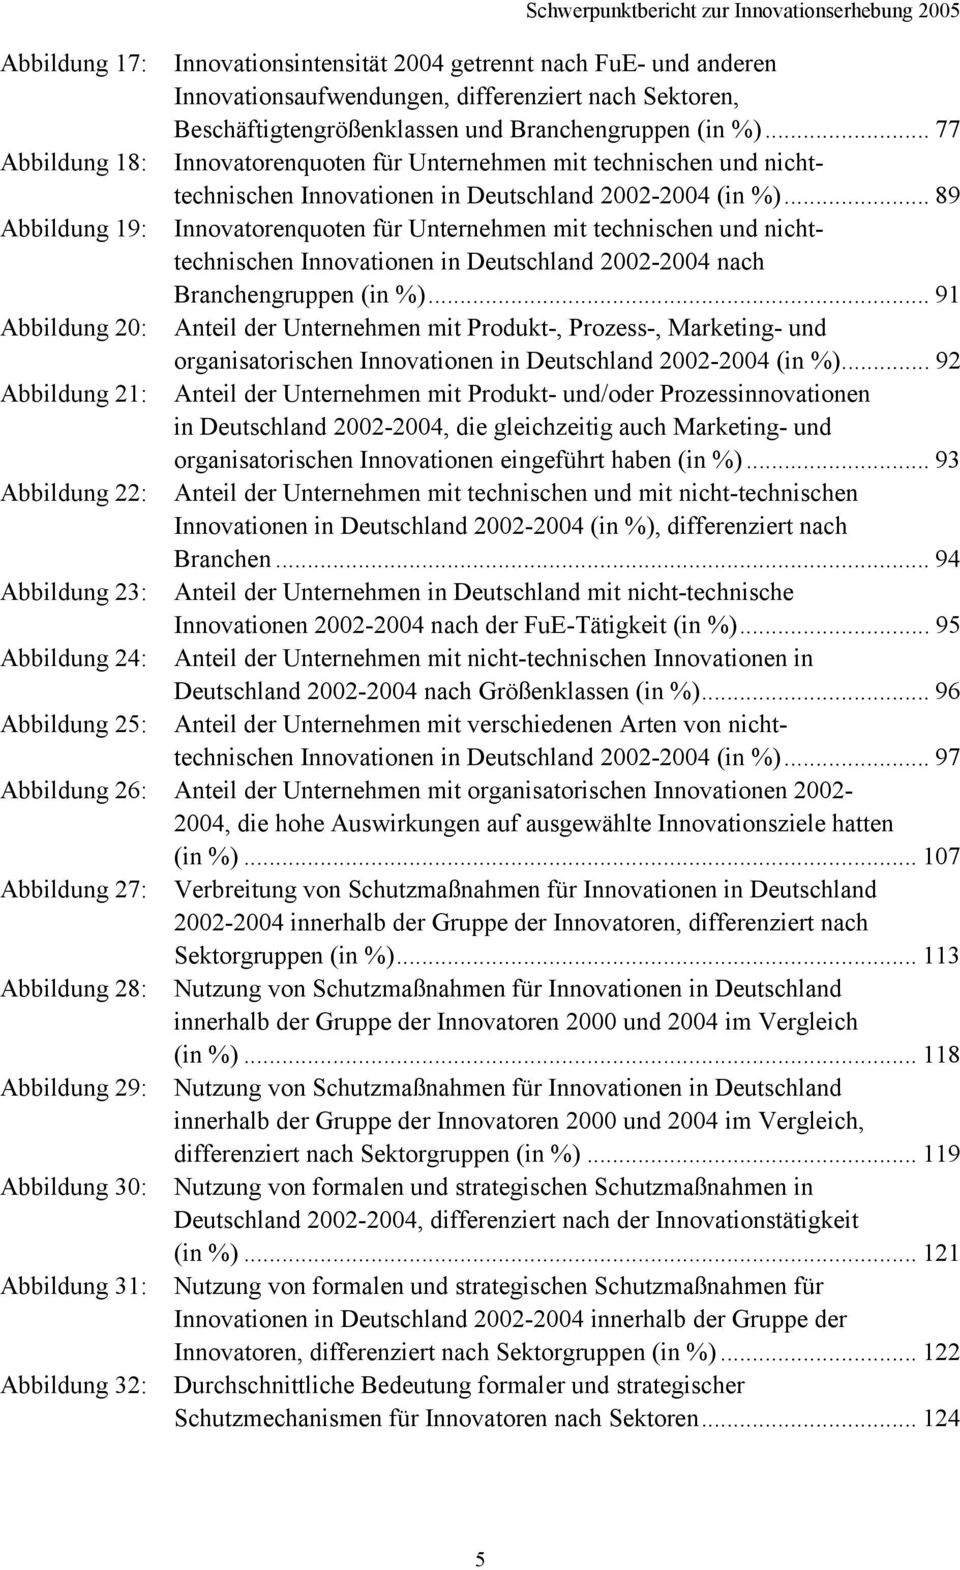 .. 89 Abbildung 19: Innovatorenquoten für Unternehmen mit technischen und nichttechnischen Innovationen in Deutschland 2002-2004 nach Branchengruppen (in %).